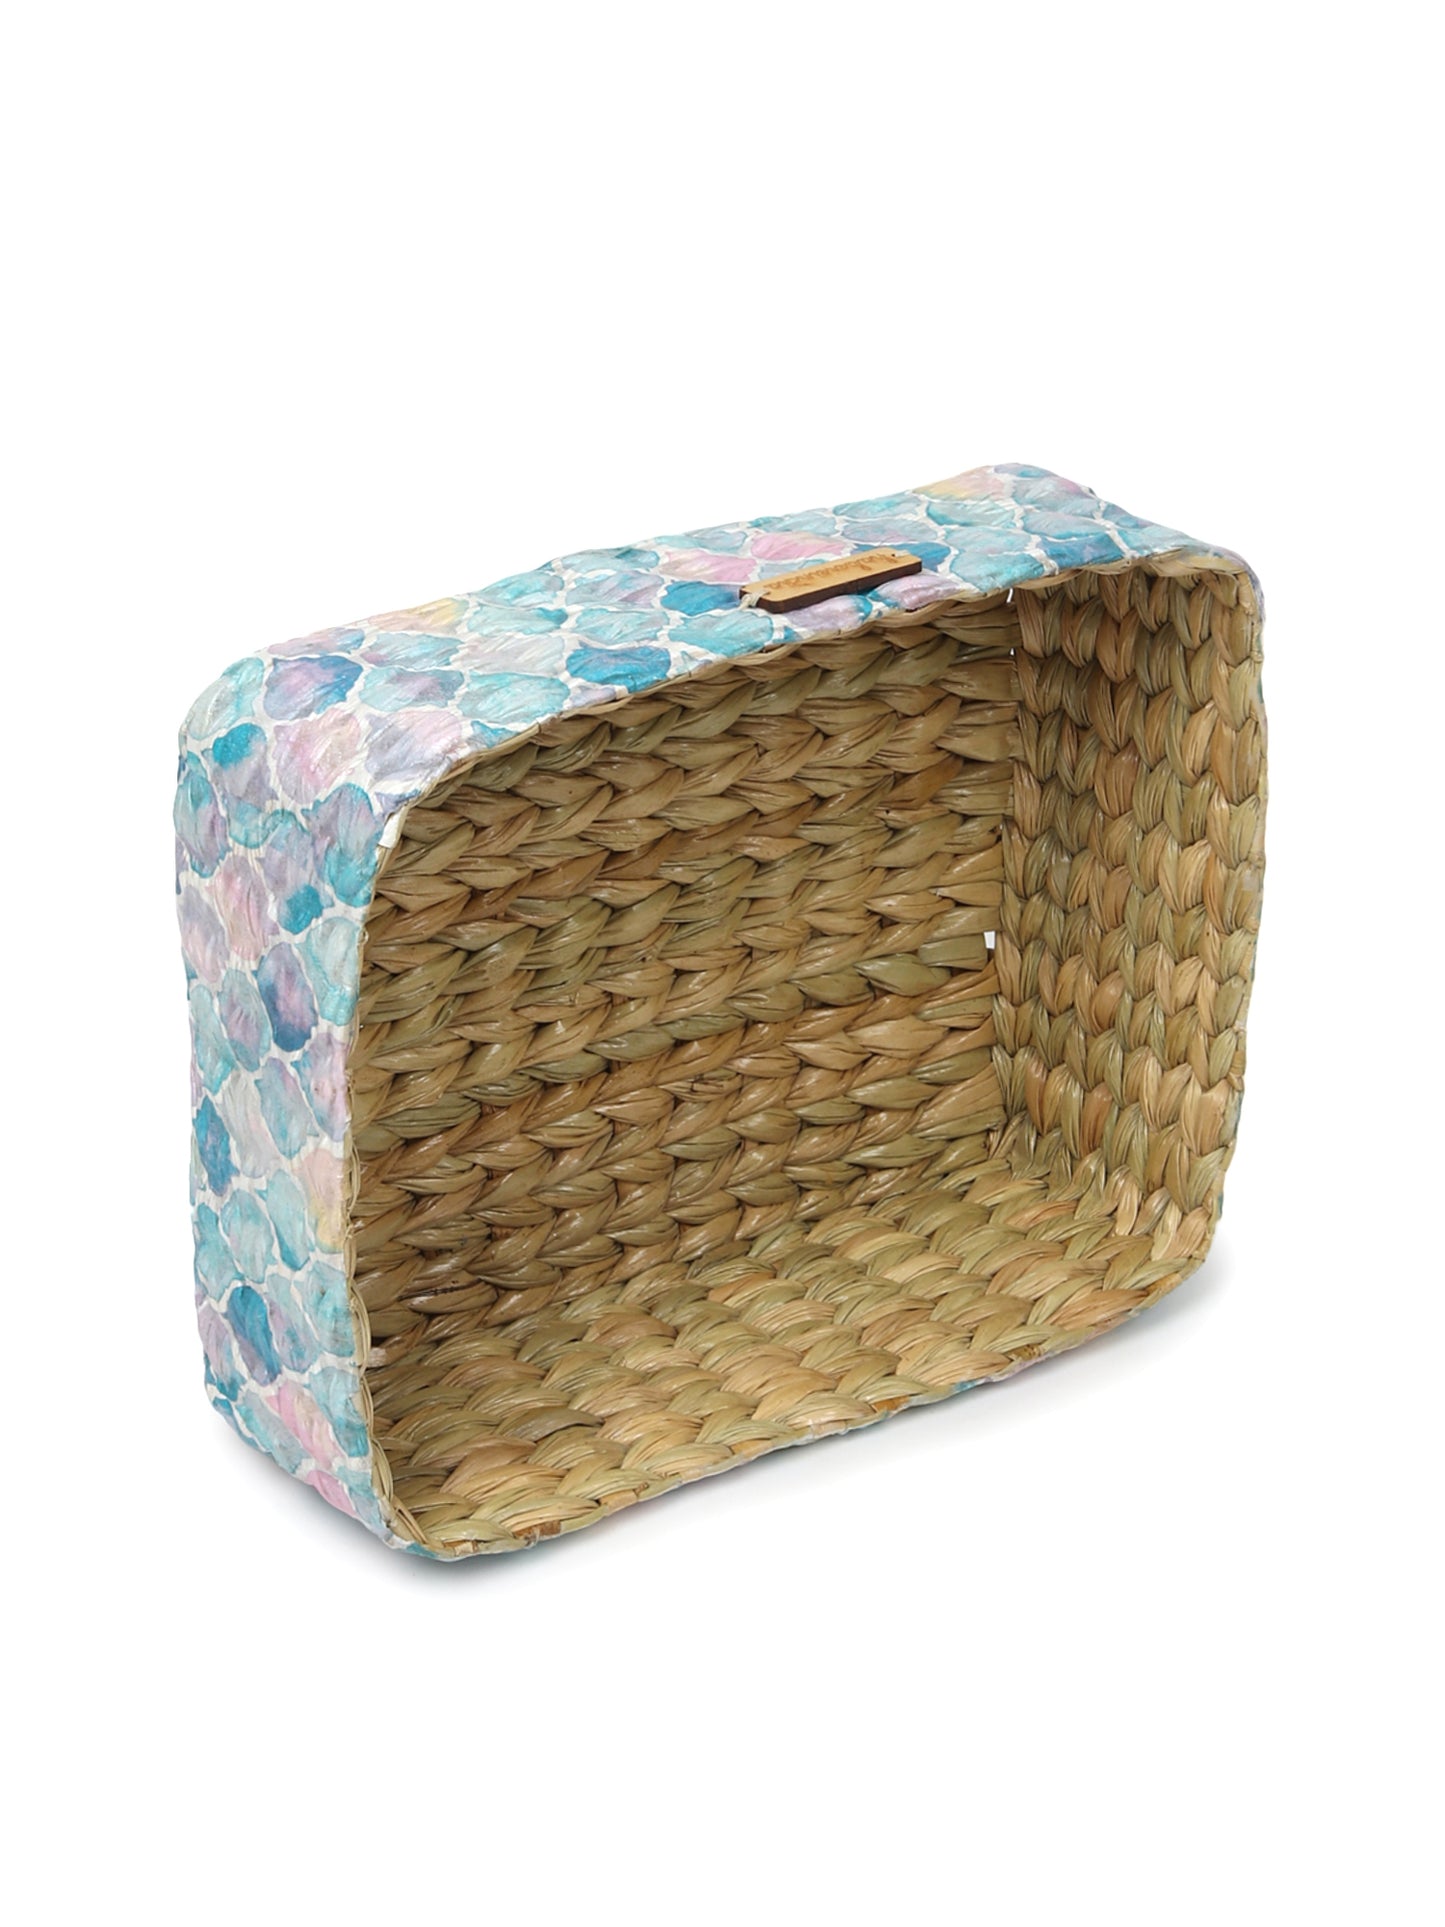 Seagrass Organiser Tray | Storage Basket